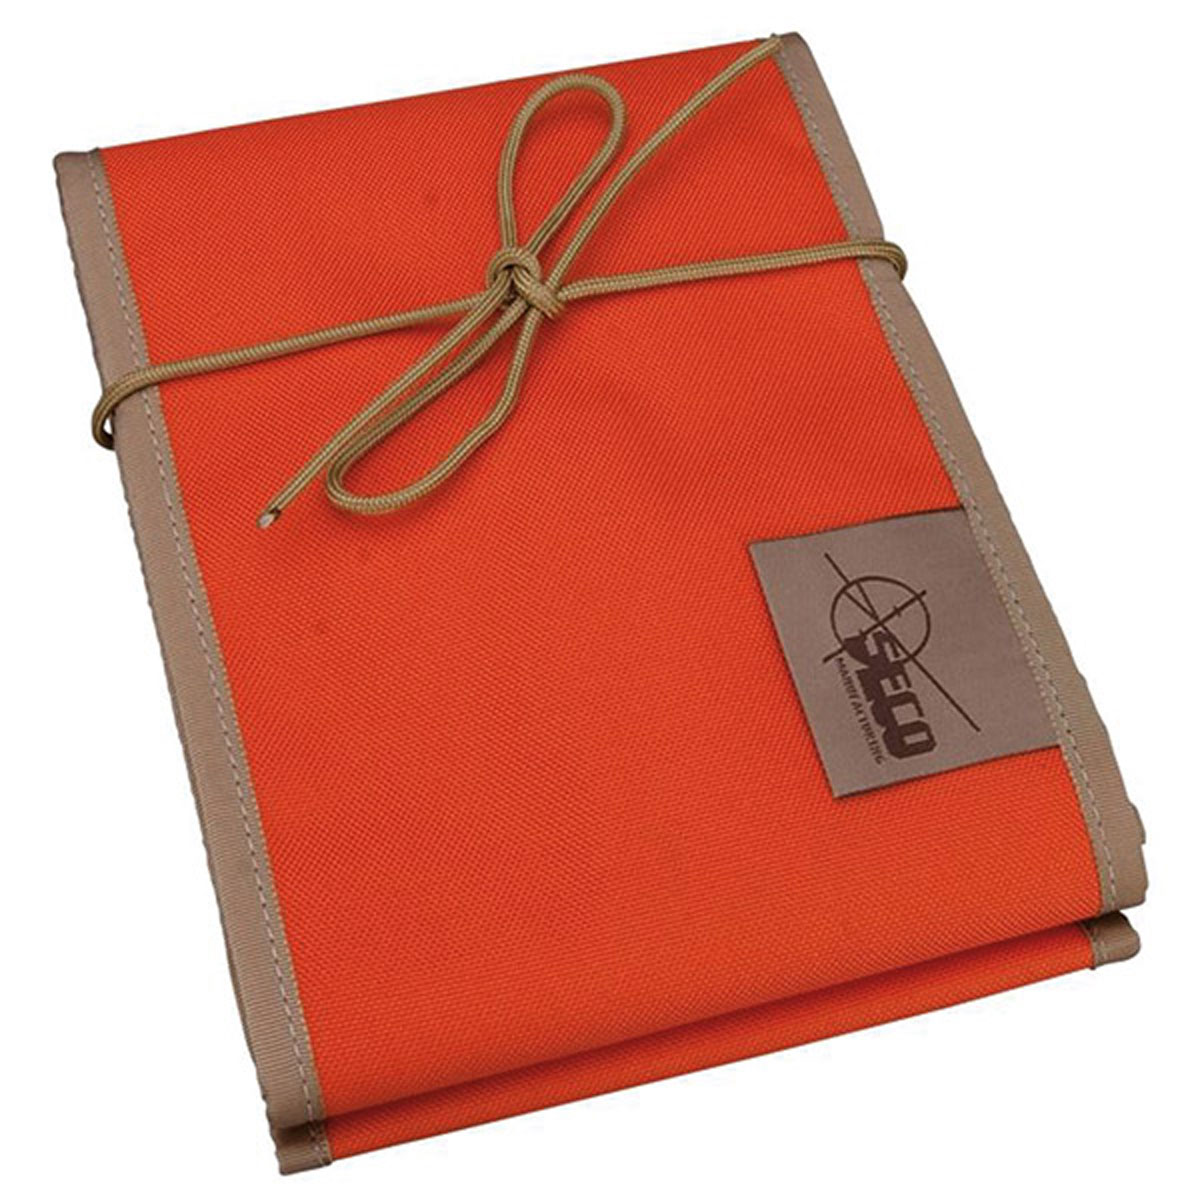 Tasche für Prismenstäbe bis 1,60 m orange, Boden lederverstärkt